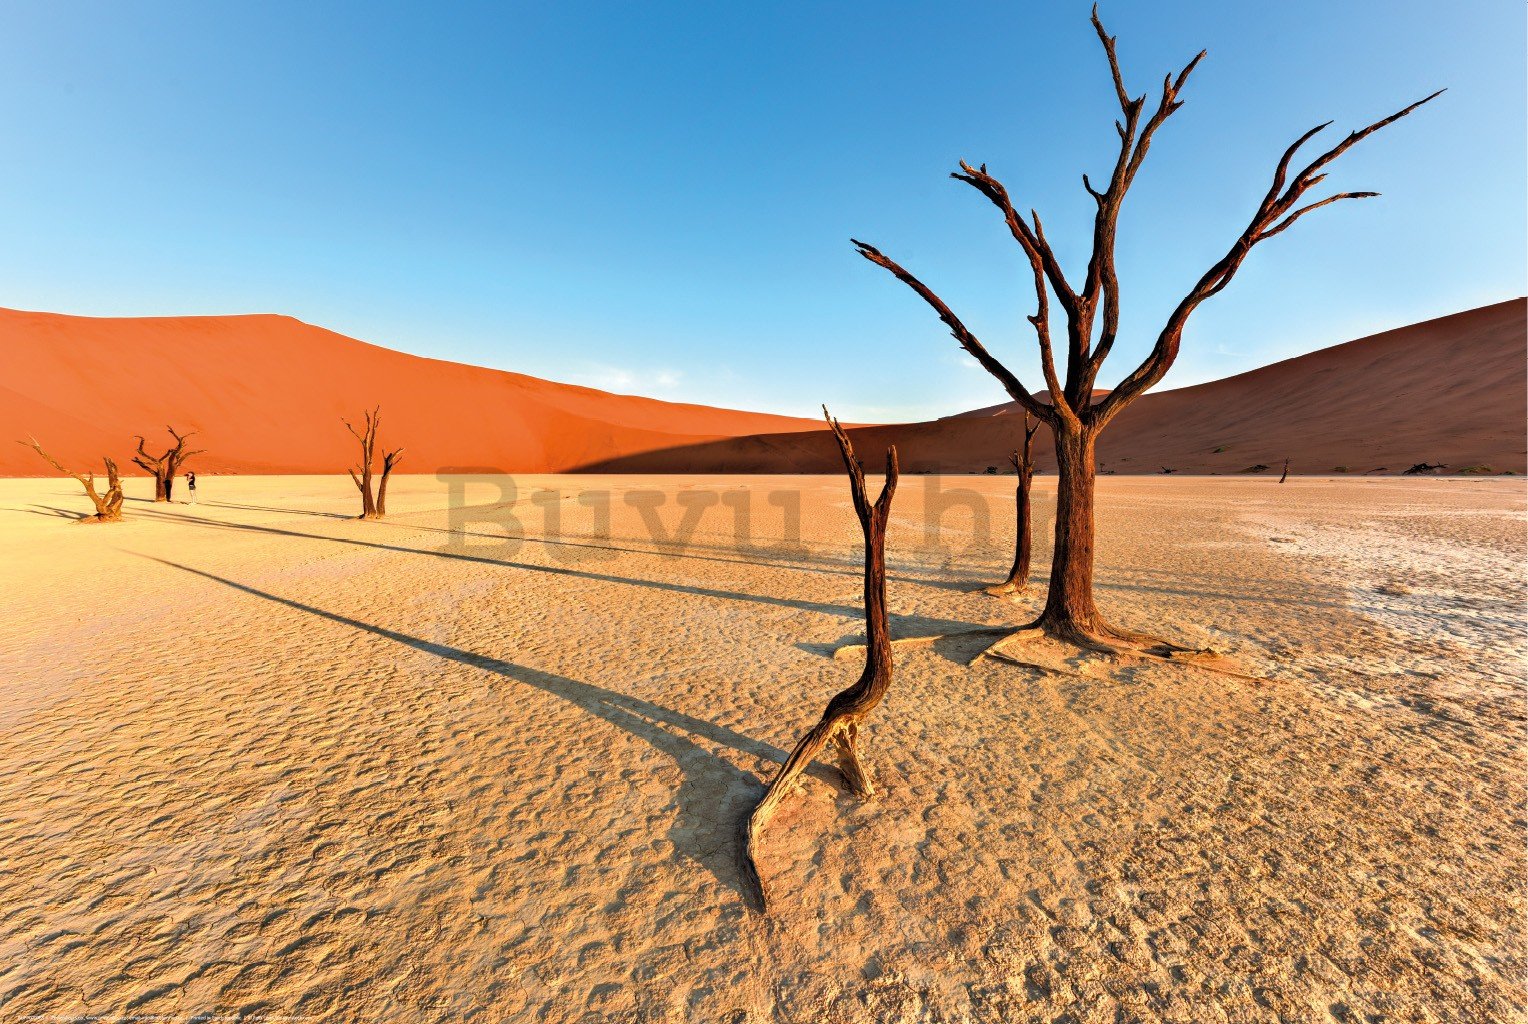 Poster: Suha pustinja Namib